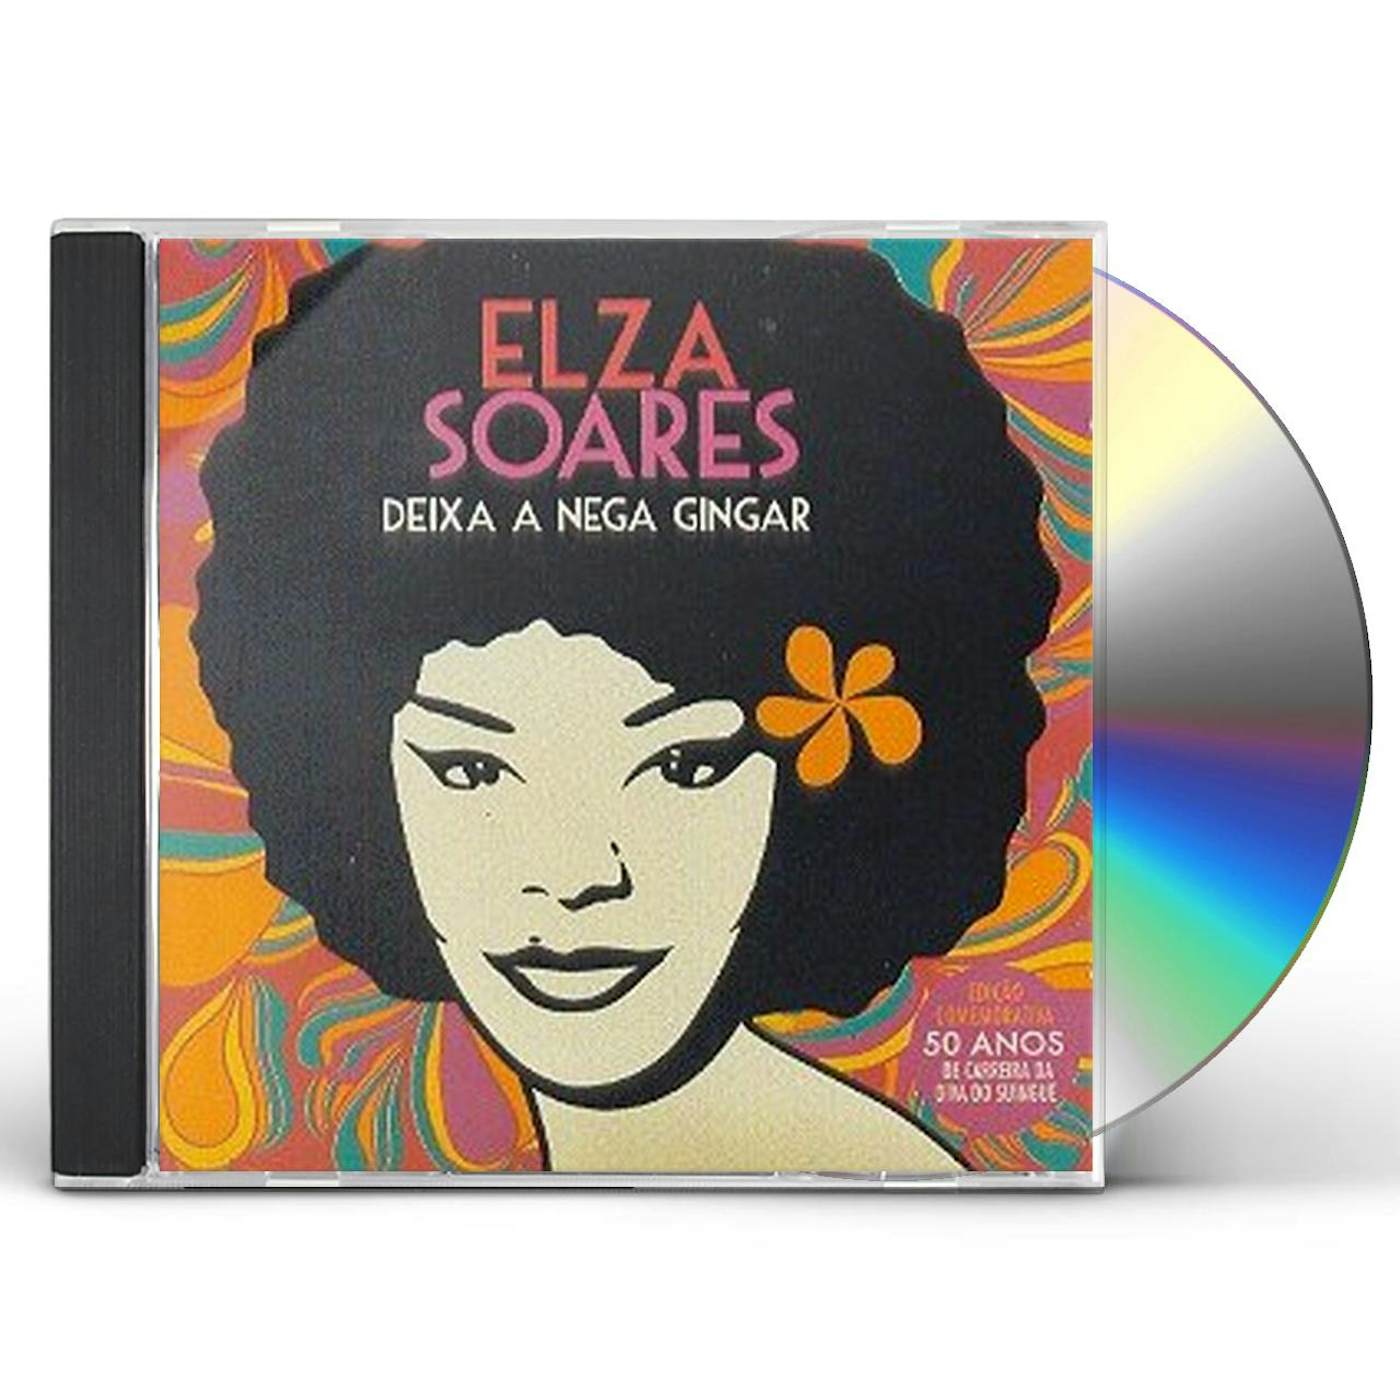 Elza Soares DEIXA A NEGRA GINGAR CD